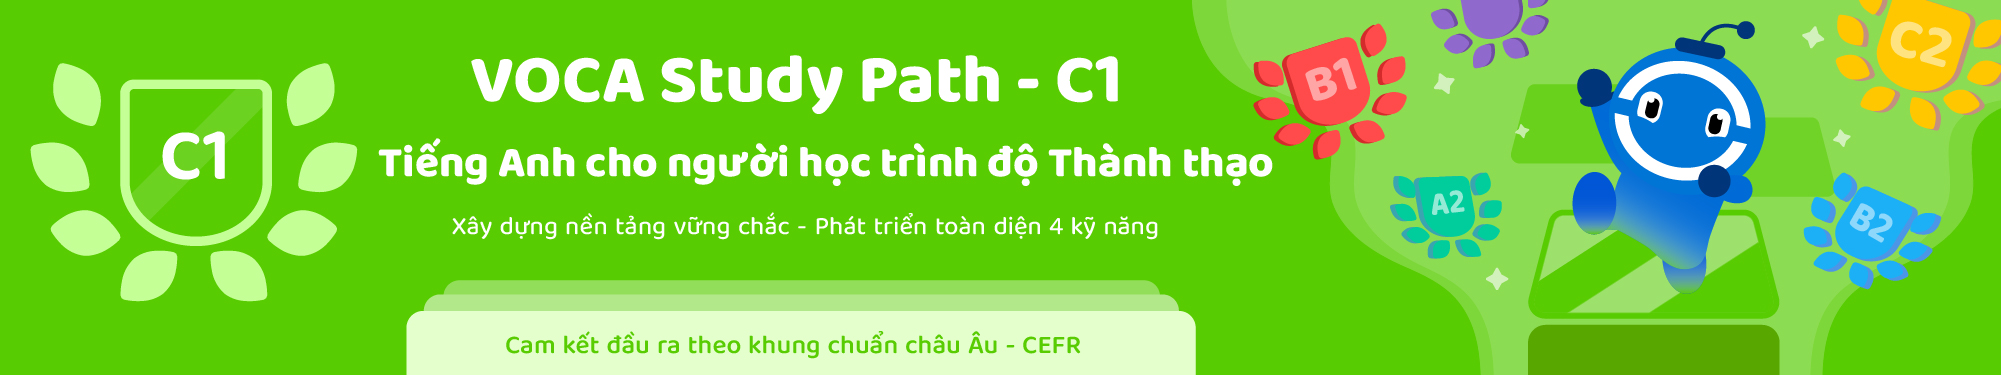 VOCA Study Path (CEFR) - Level C1 banner